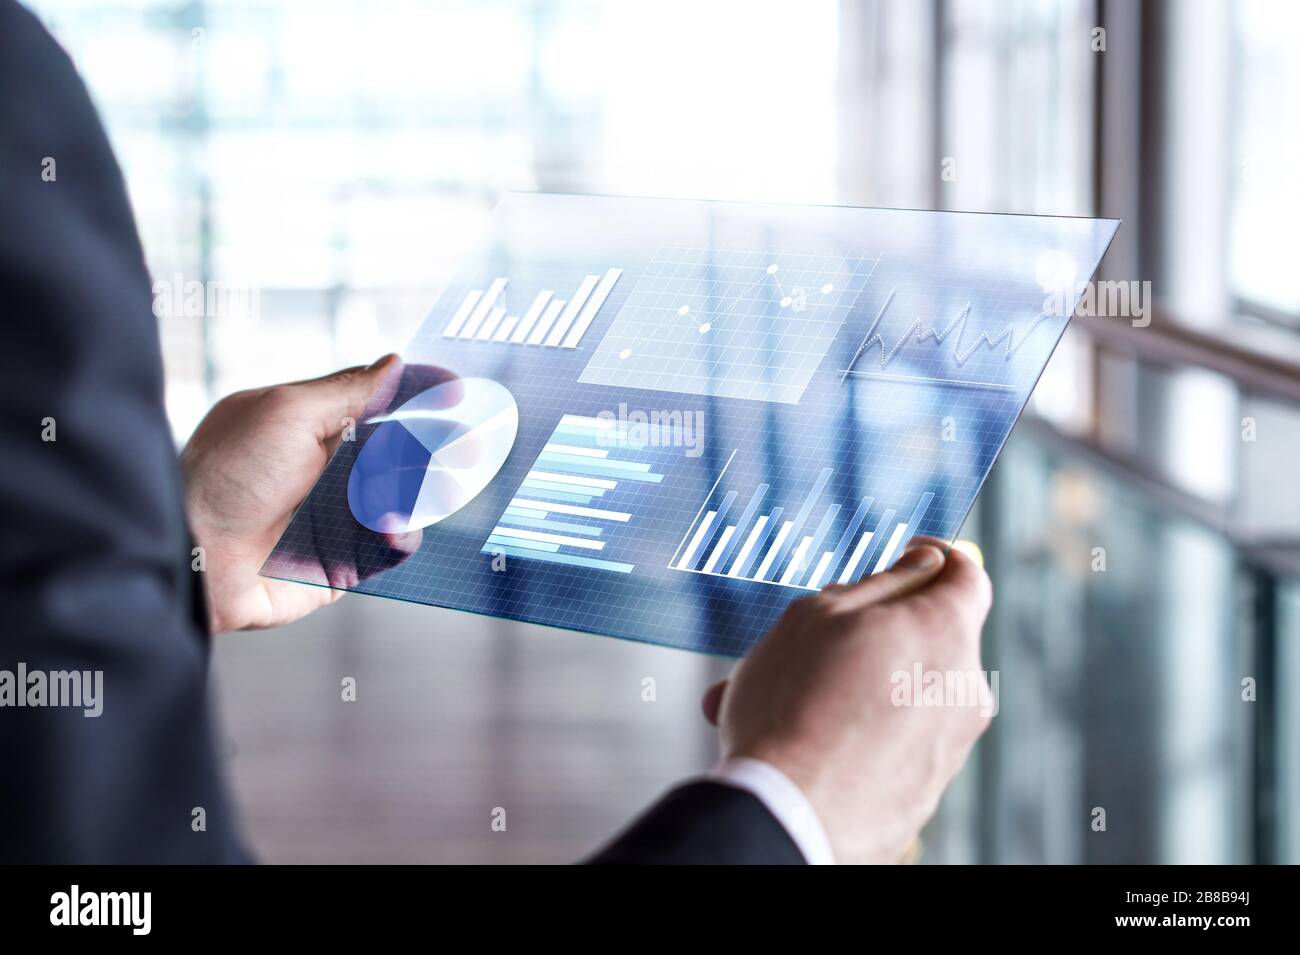 Tableta futurista transparente. Hombre de negocios con pantalla táctil virtual. Tecnología móvil moderna en contabilidad, finanzas, datos y análisis. Foto de stock